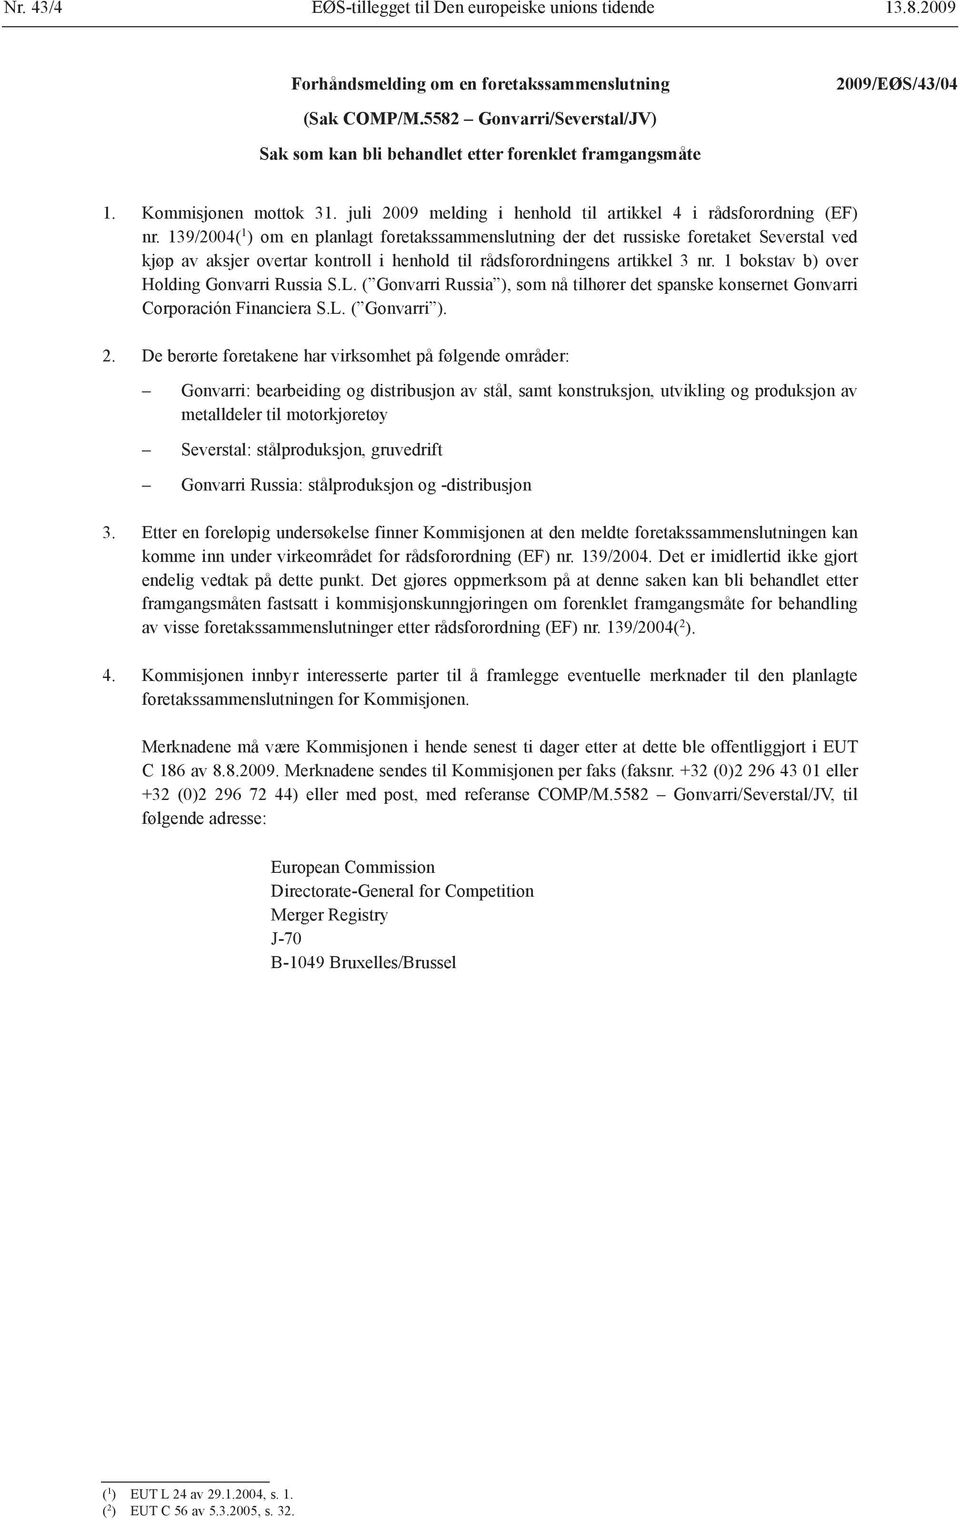 139/2004( 1 ) om en planlagt foretakssammenslutning der det russiske foretaket Severstal ved kjøp av aksjer overtar kontroll i henhold til rådsforordningens artikkel 3 nr.